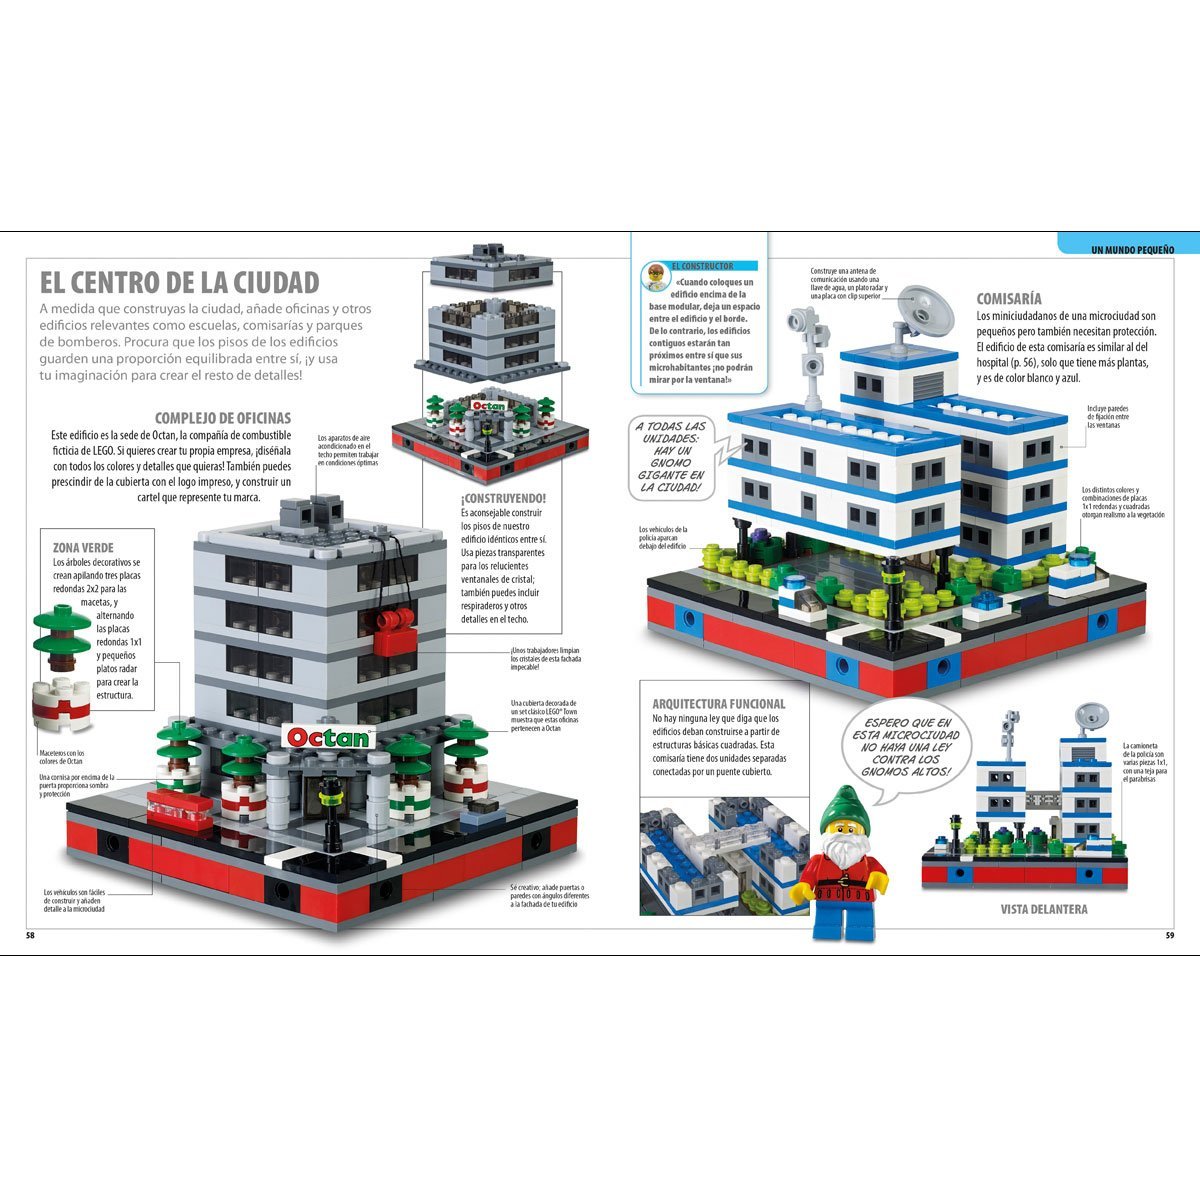 Lego - M&aacute;s Ideas para Jugar Dk